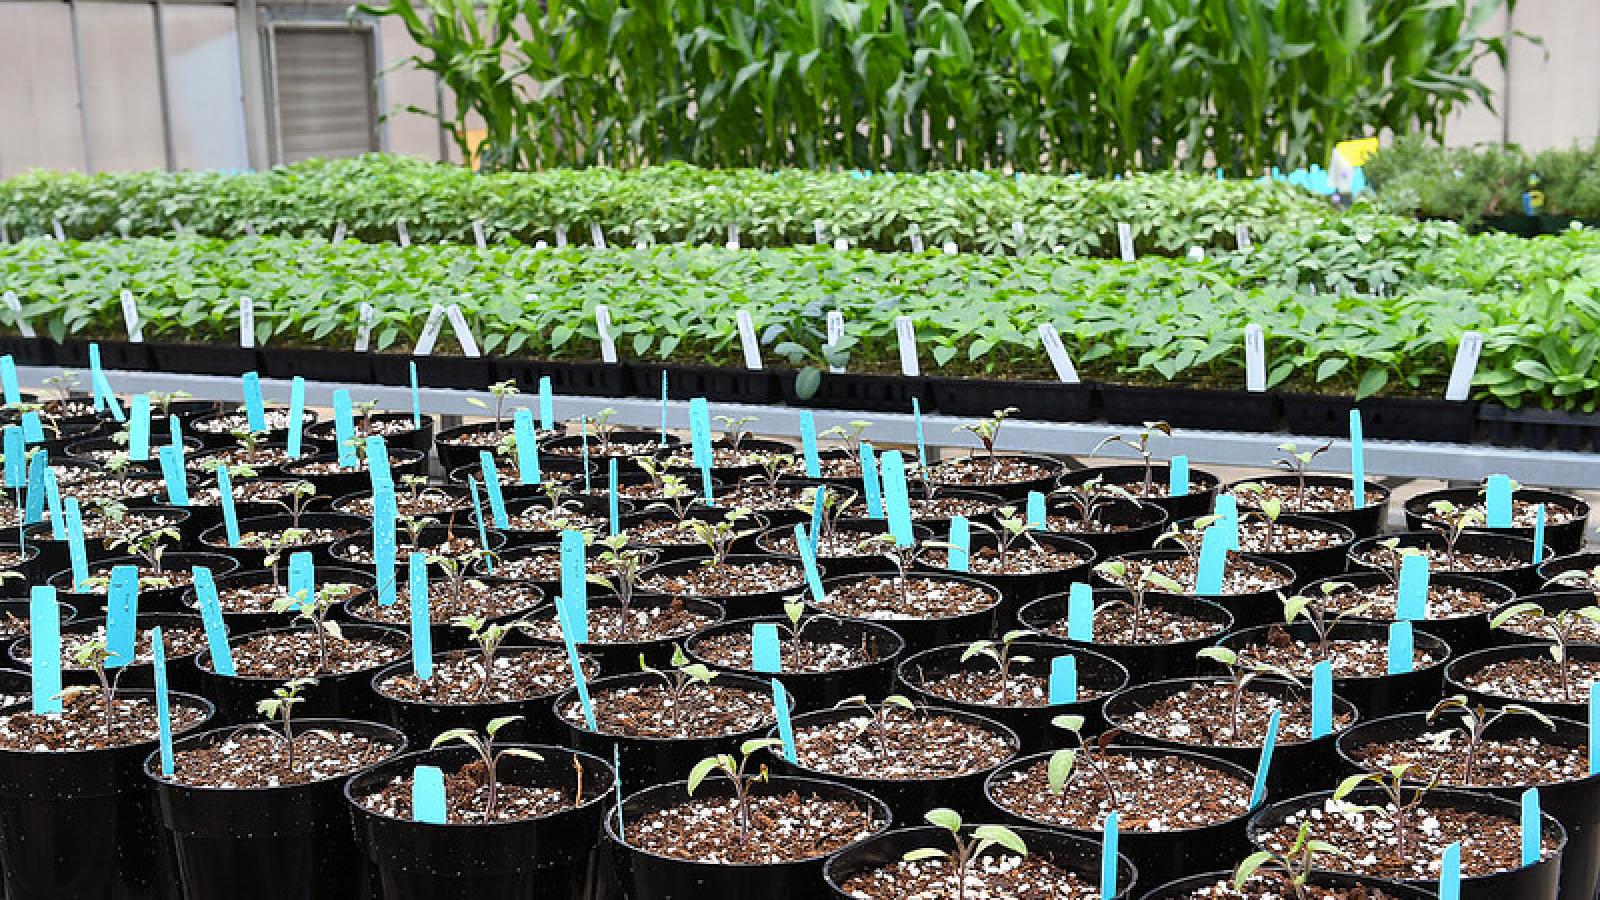 Seedlings growing in greenhouse